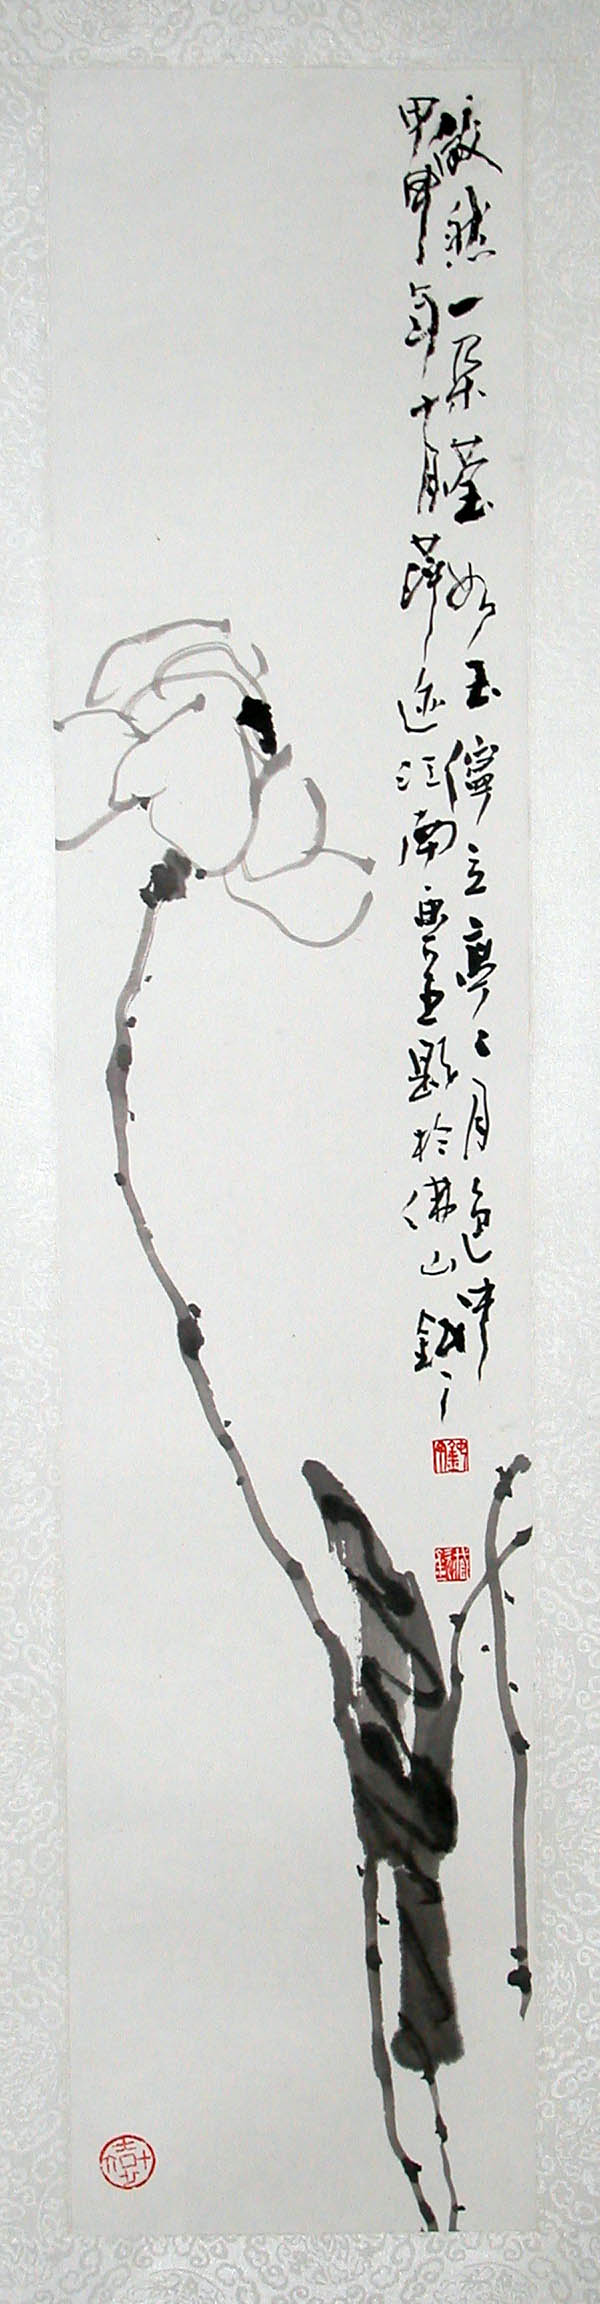 中国传统文人画——钝丁作品